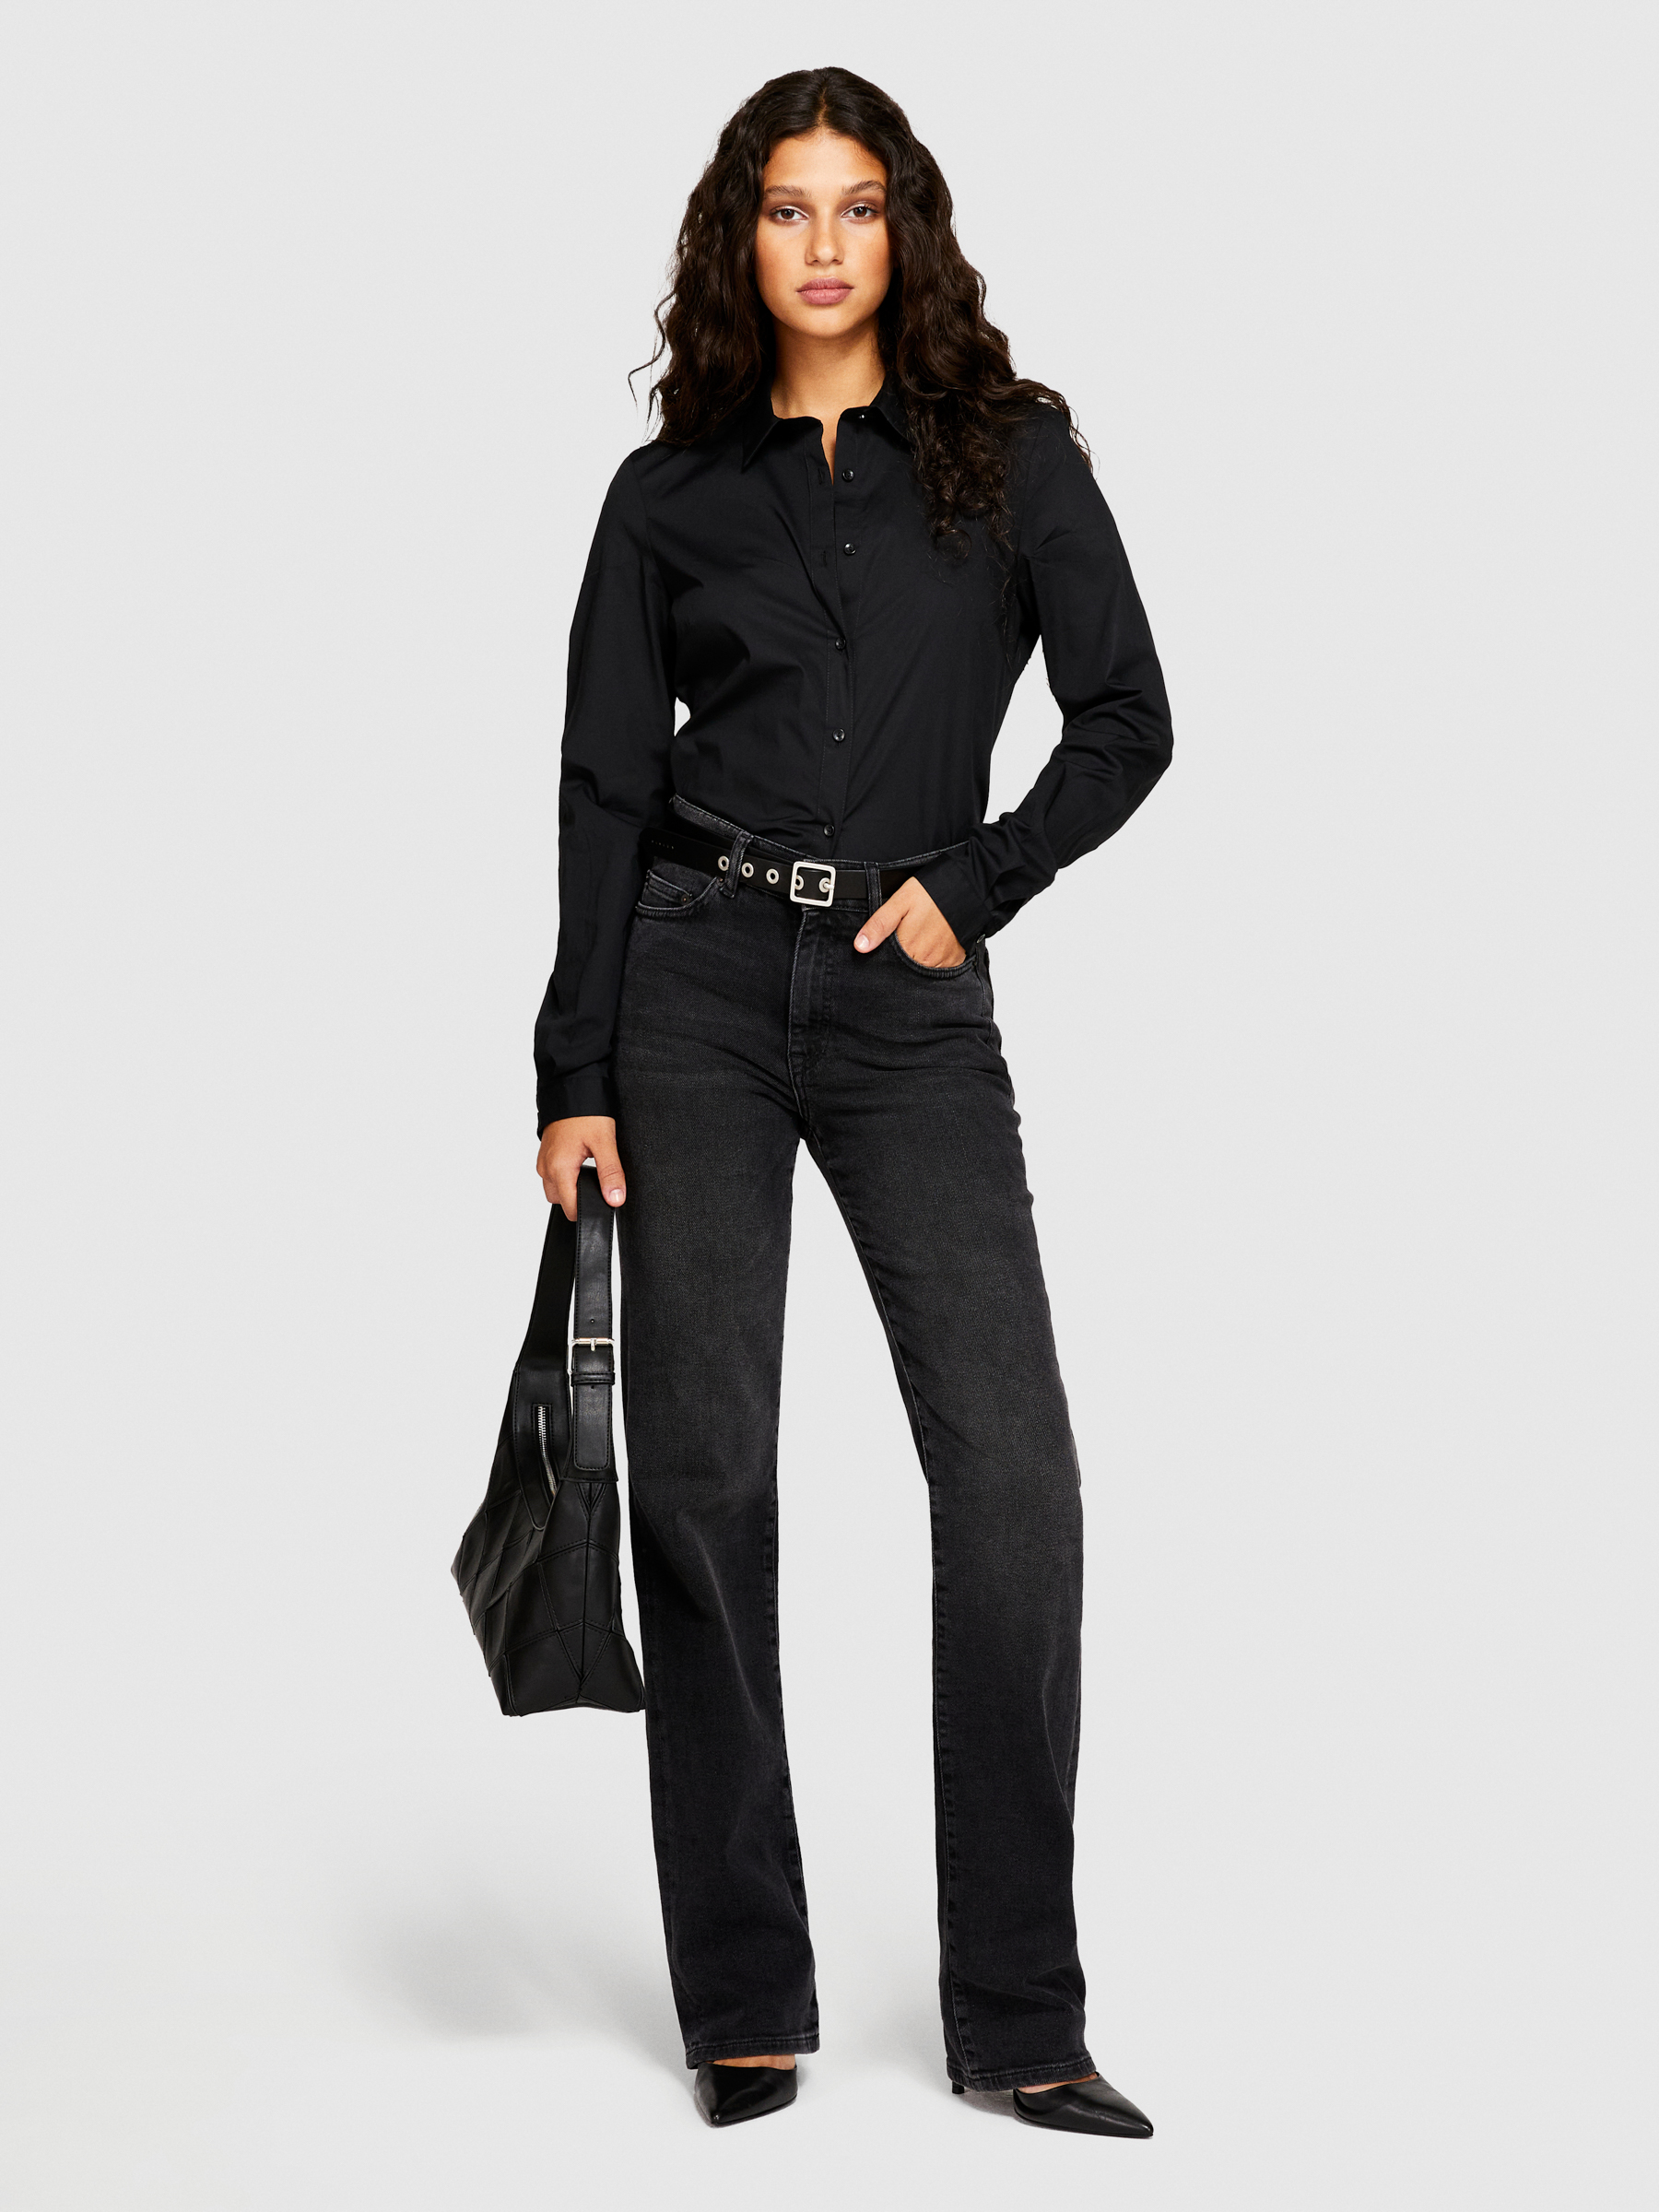 Sisley - Slim Fit Shirt, Woman, Black, Size: XS